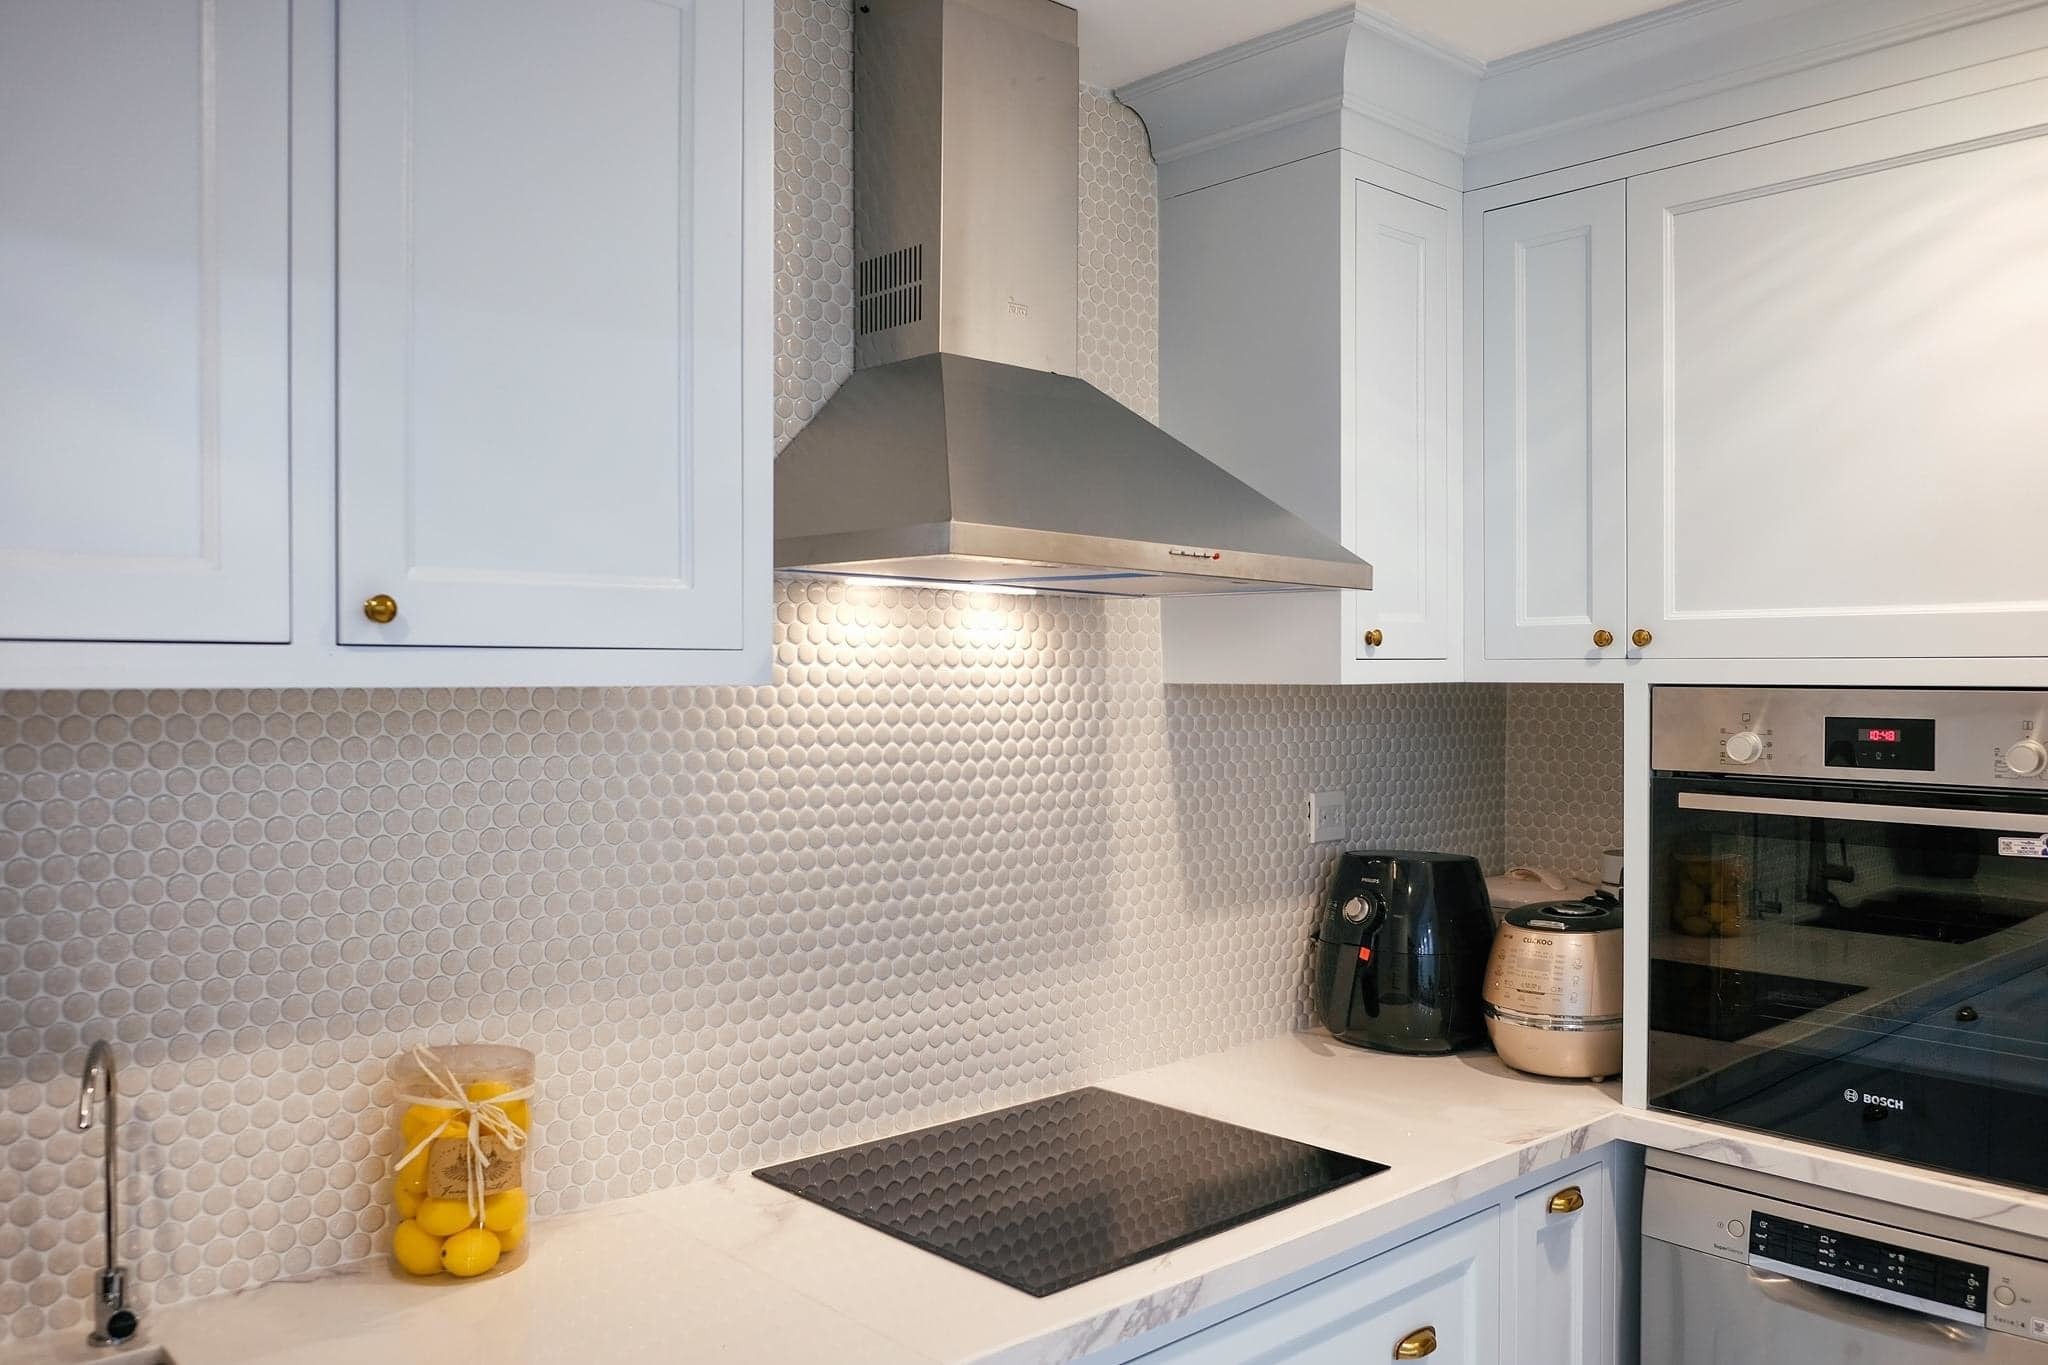 
Trong bếp được ốp gạch mosaic sạch sẽ, dễ dàng vệ sinh và giúp gian bếp luôn sáng sủa
